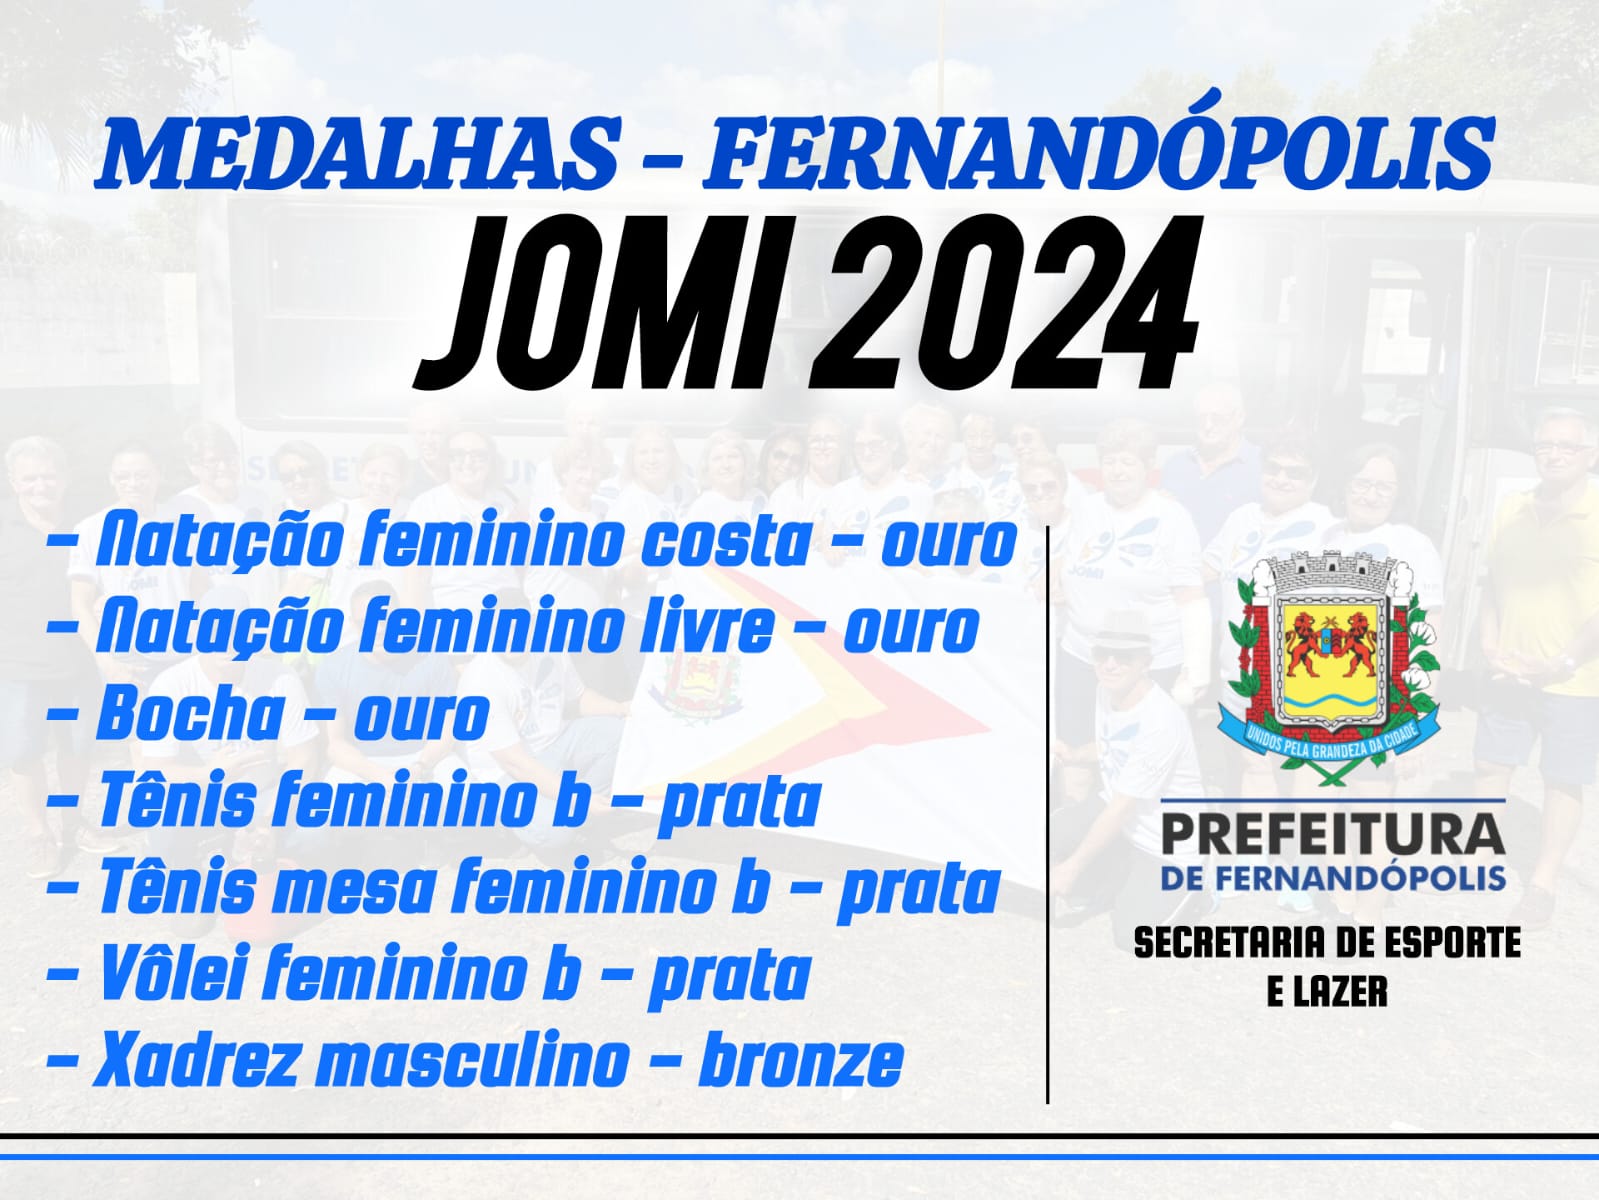 Fernandópolis conquista importantes medalhas no JOMI 2024 em Araçatuba